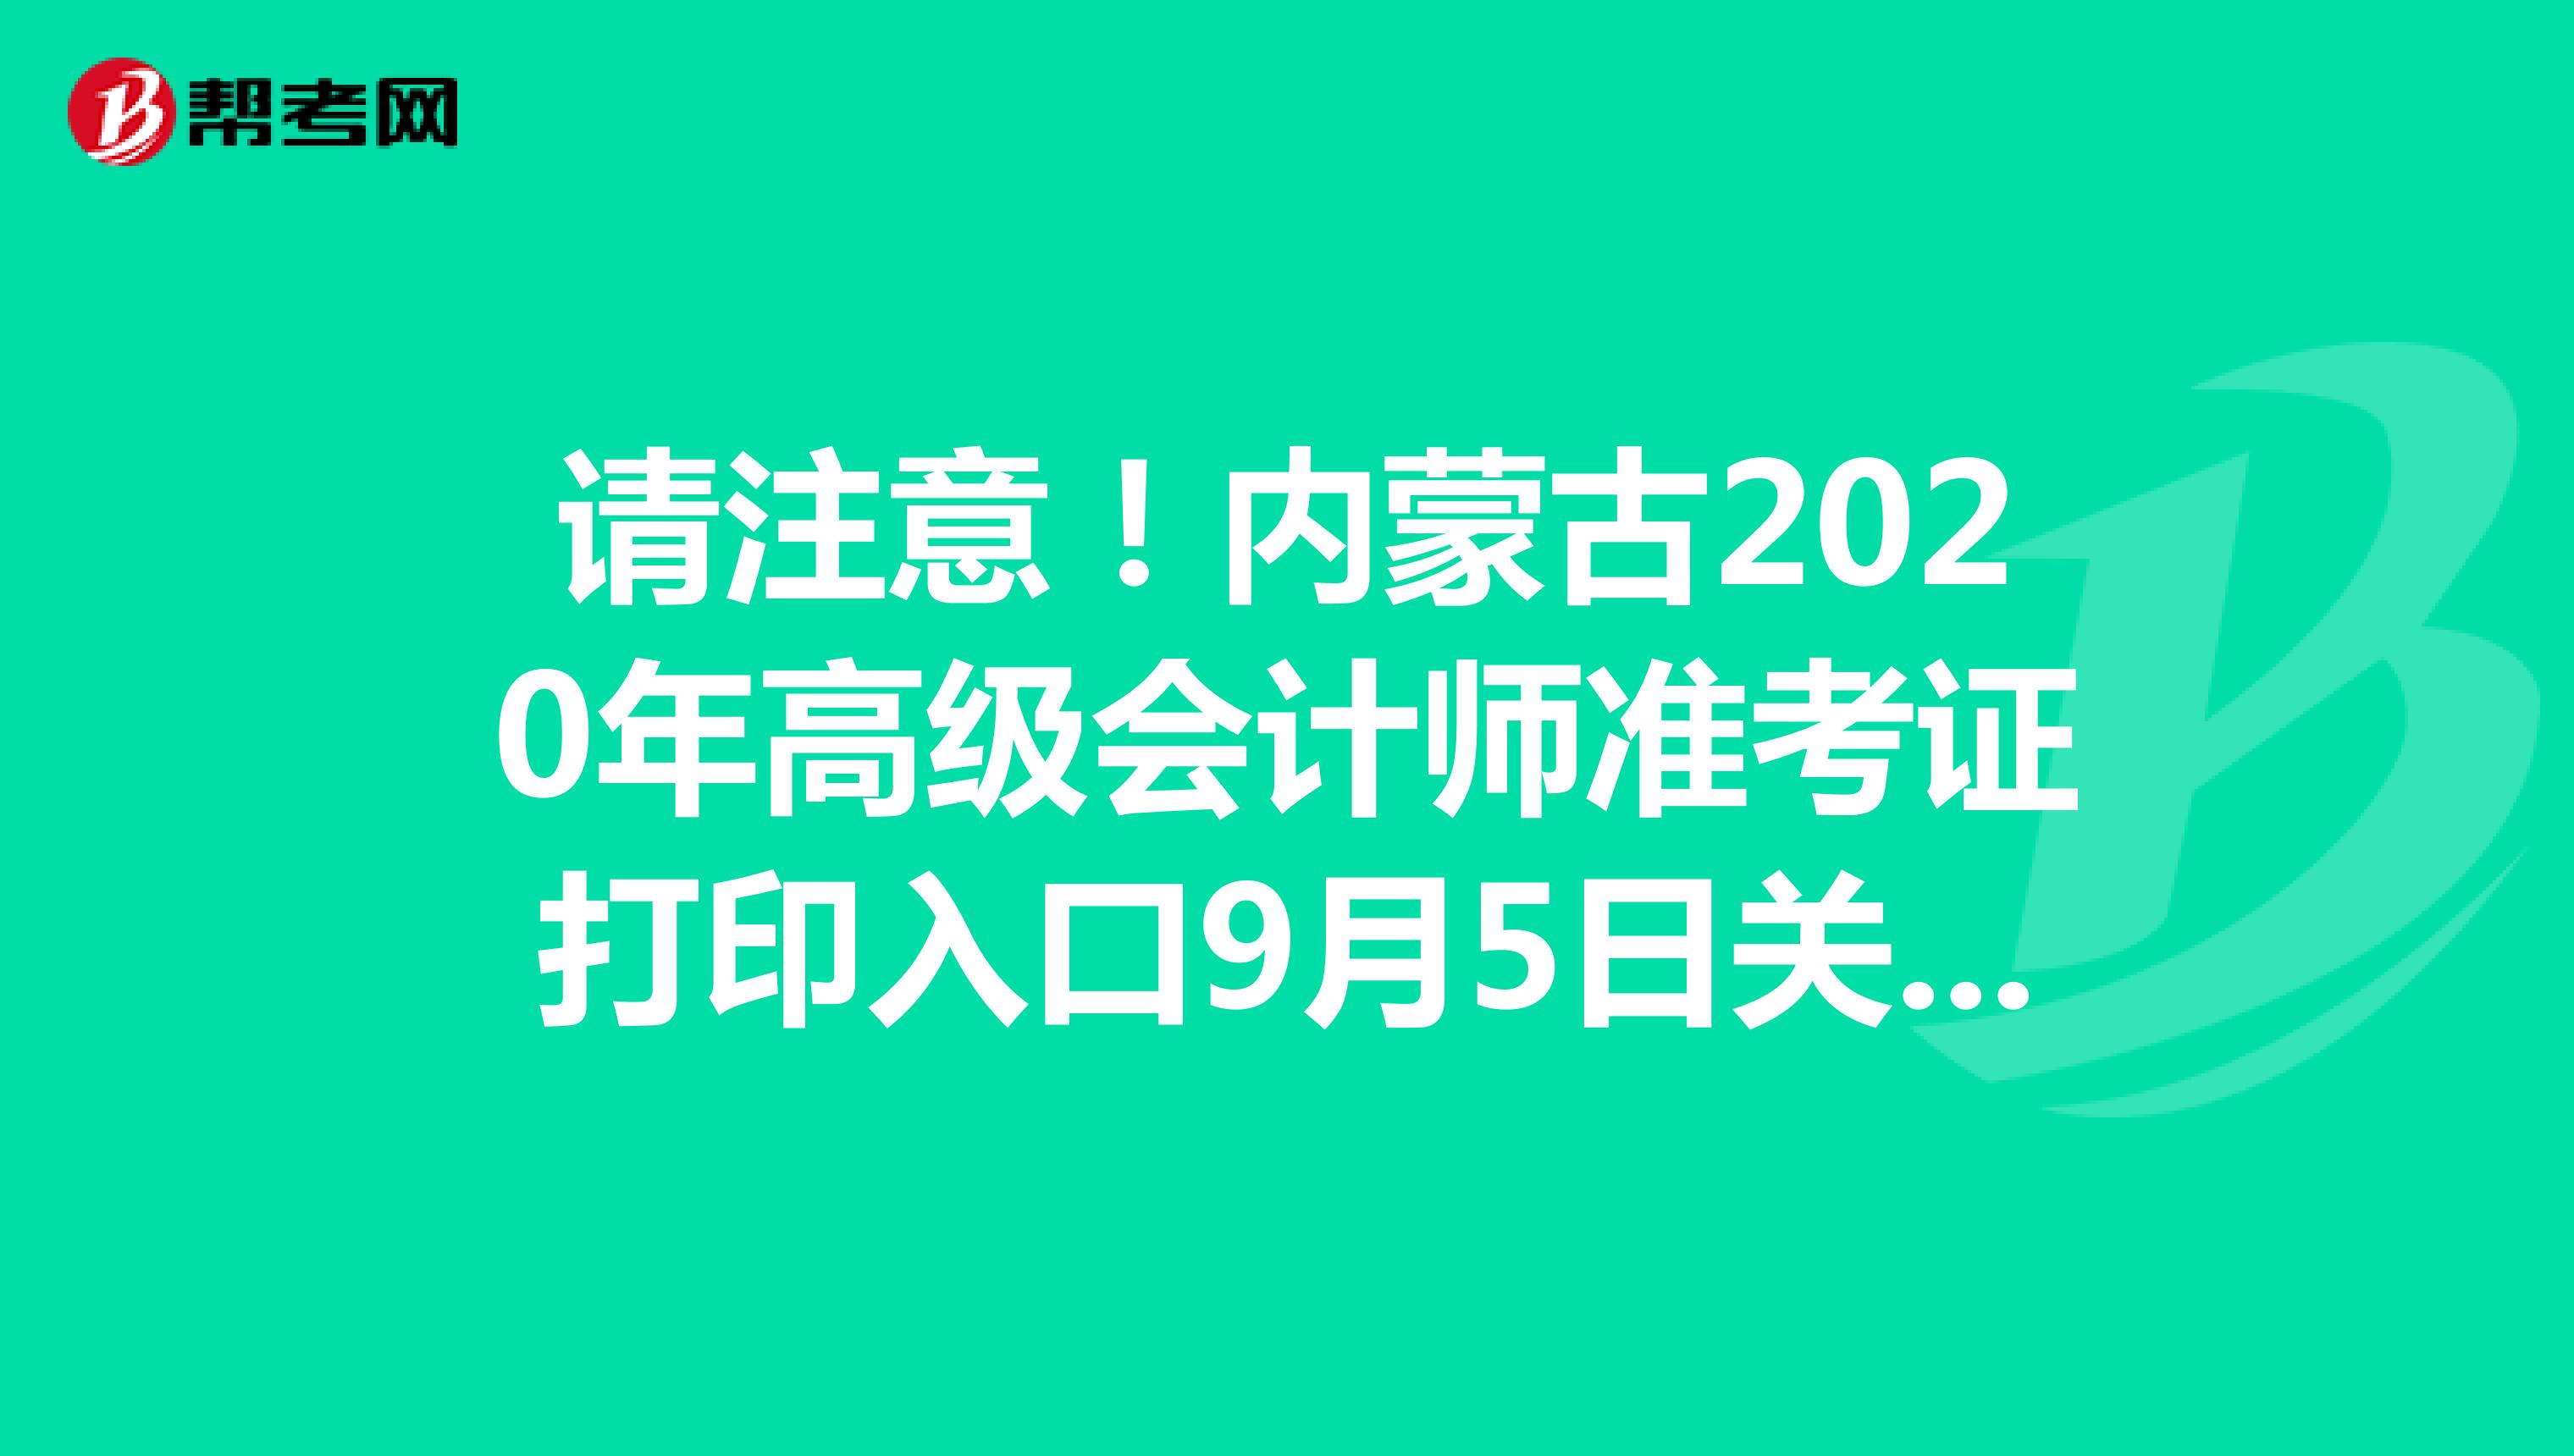 请注意！内蒙古2020年高级会计师准考证打印入口9月5日关闭！